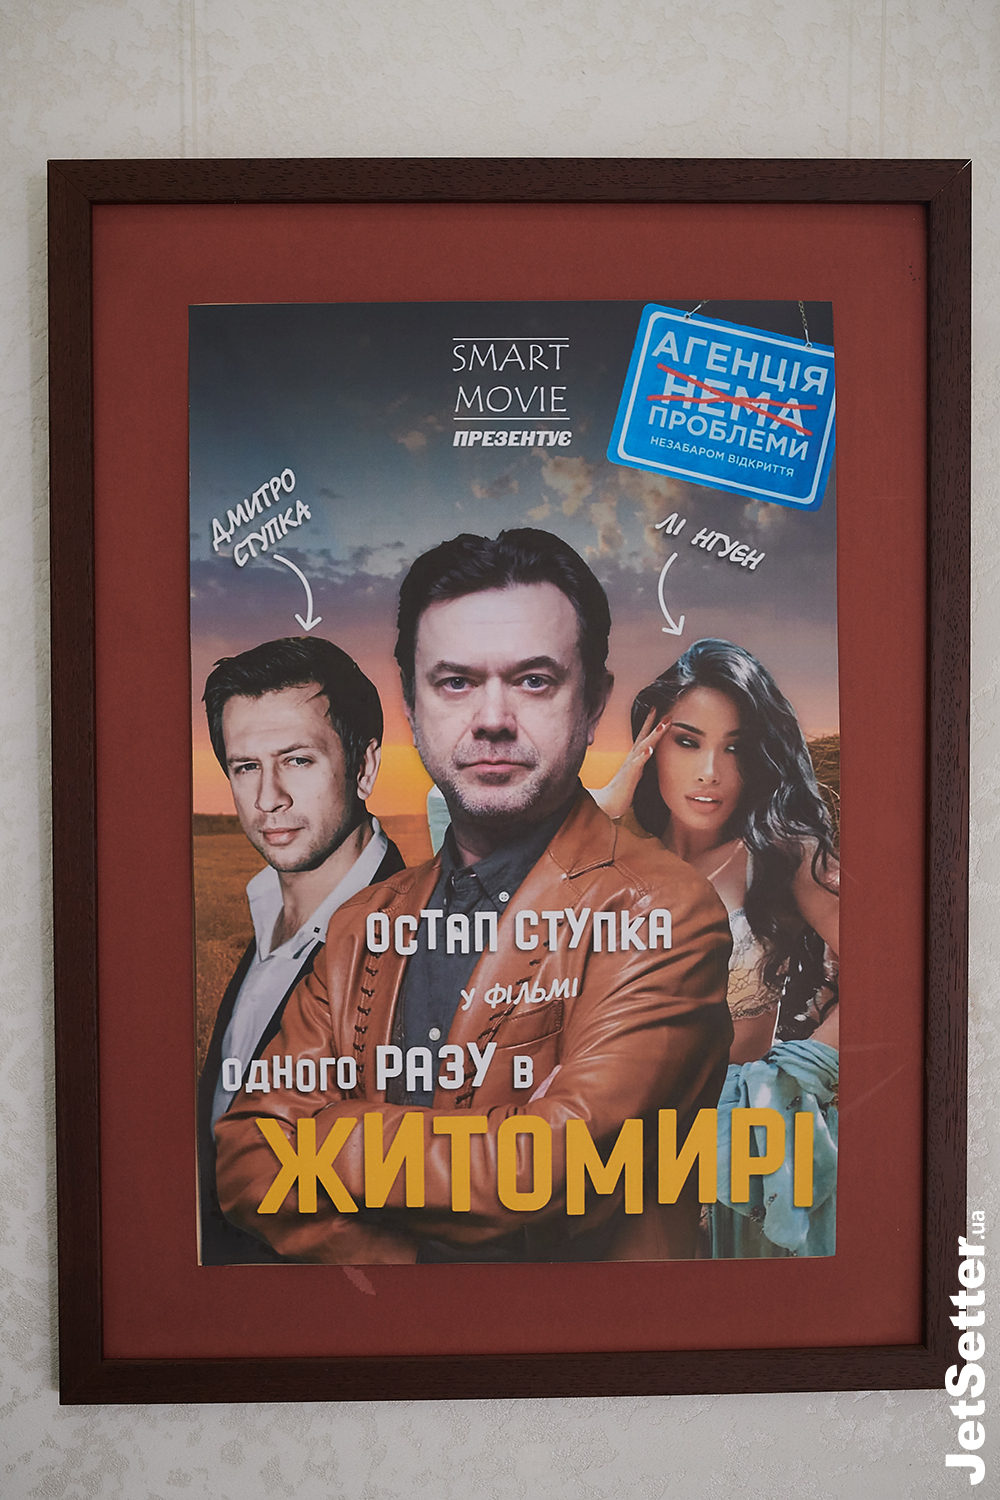 Володимир Горянський презентував першу інвестиційну кінокомпанію Smart movie